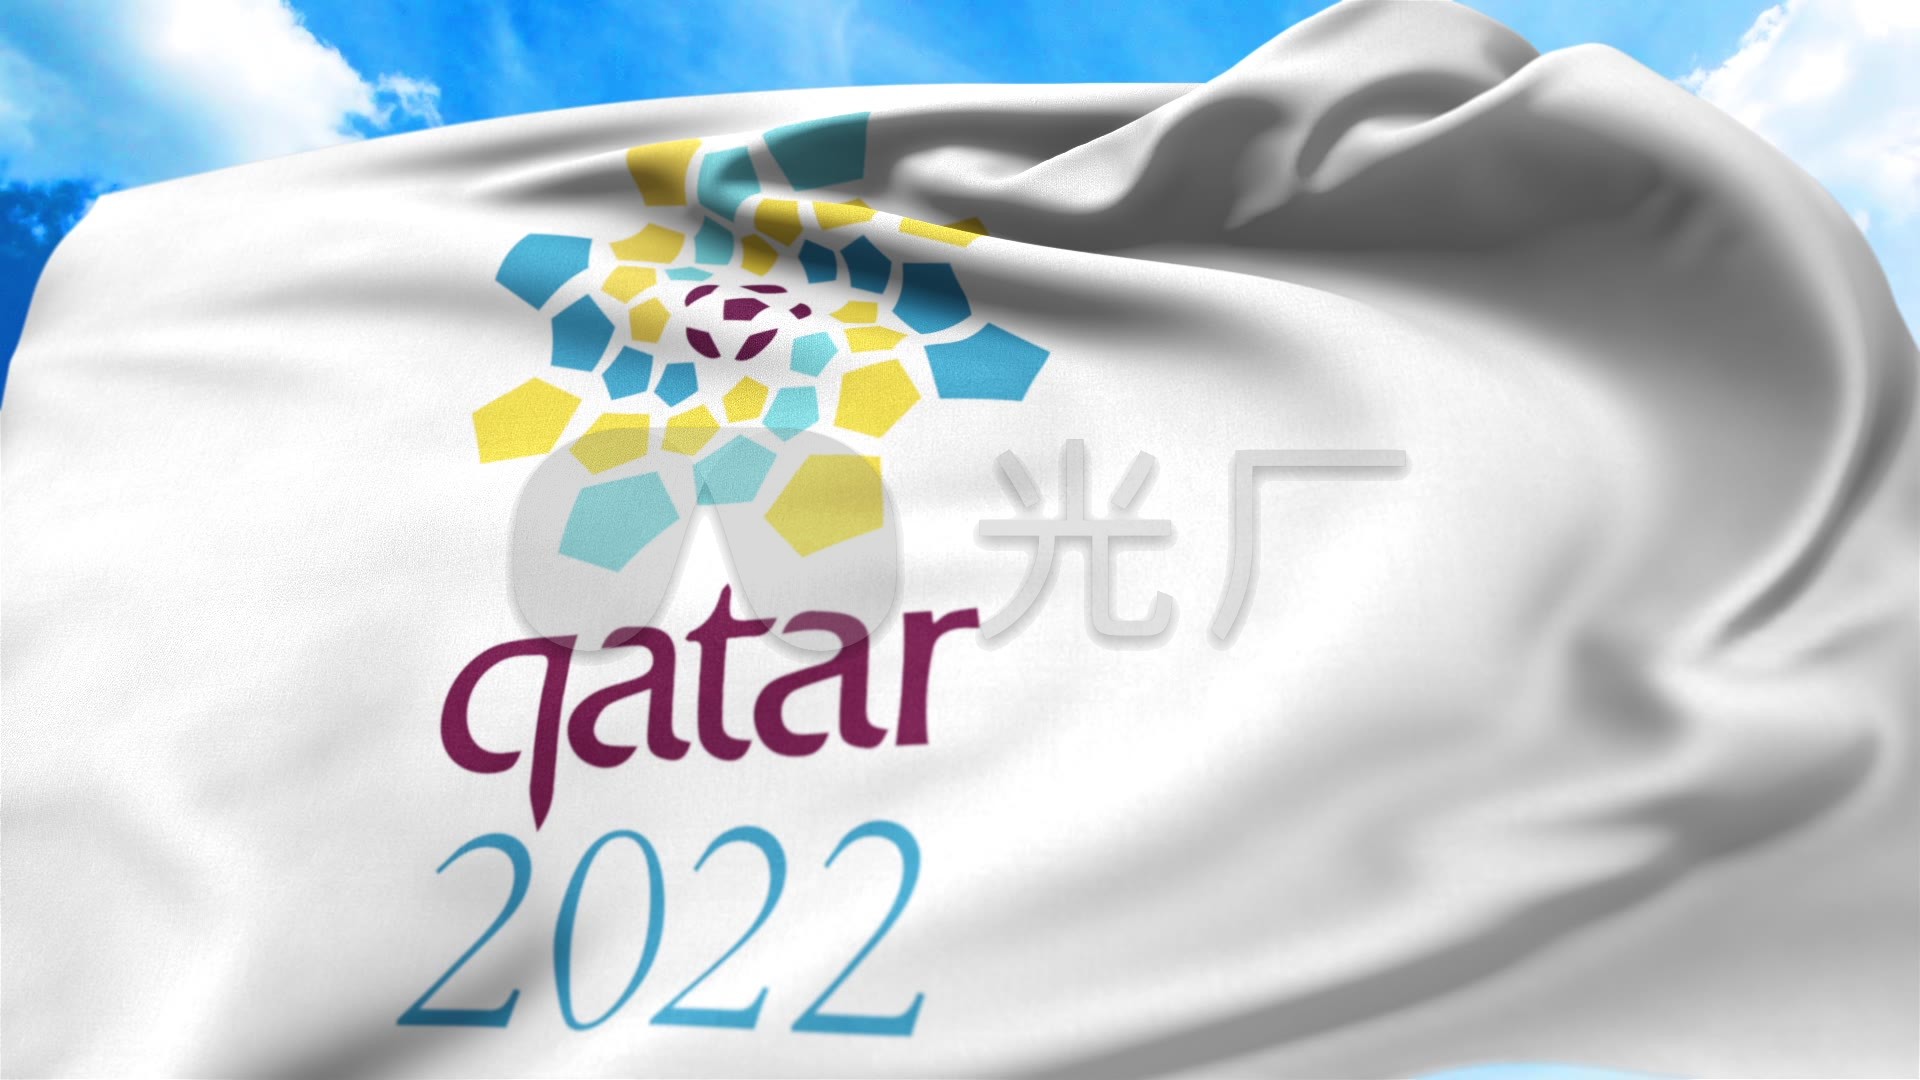 2022卡塔尔世界杯旗帜_1920x1080_高清视频素材下载